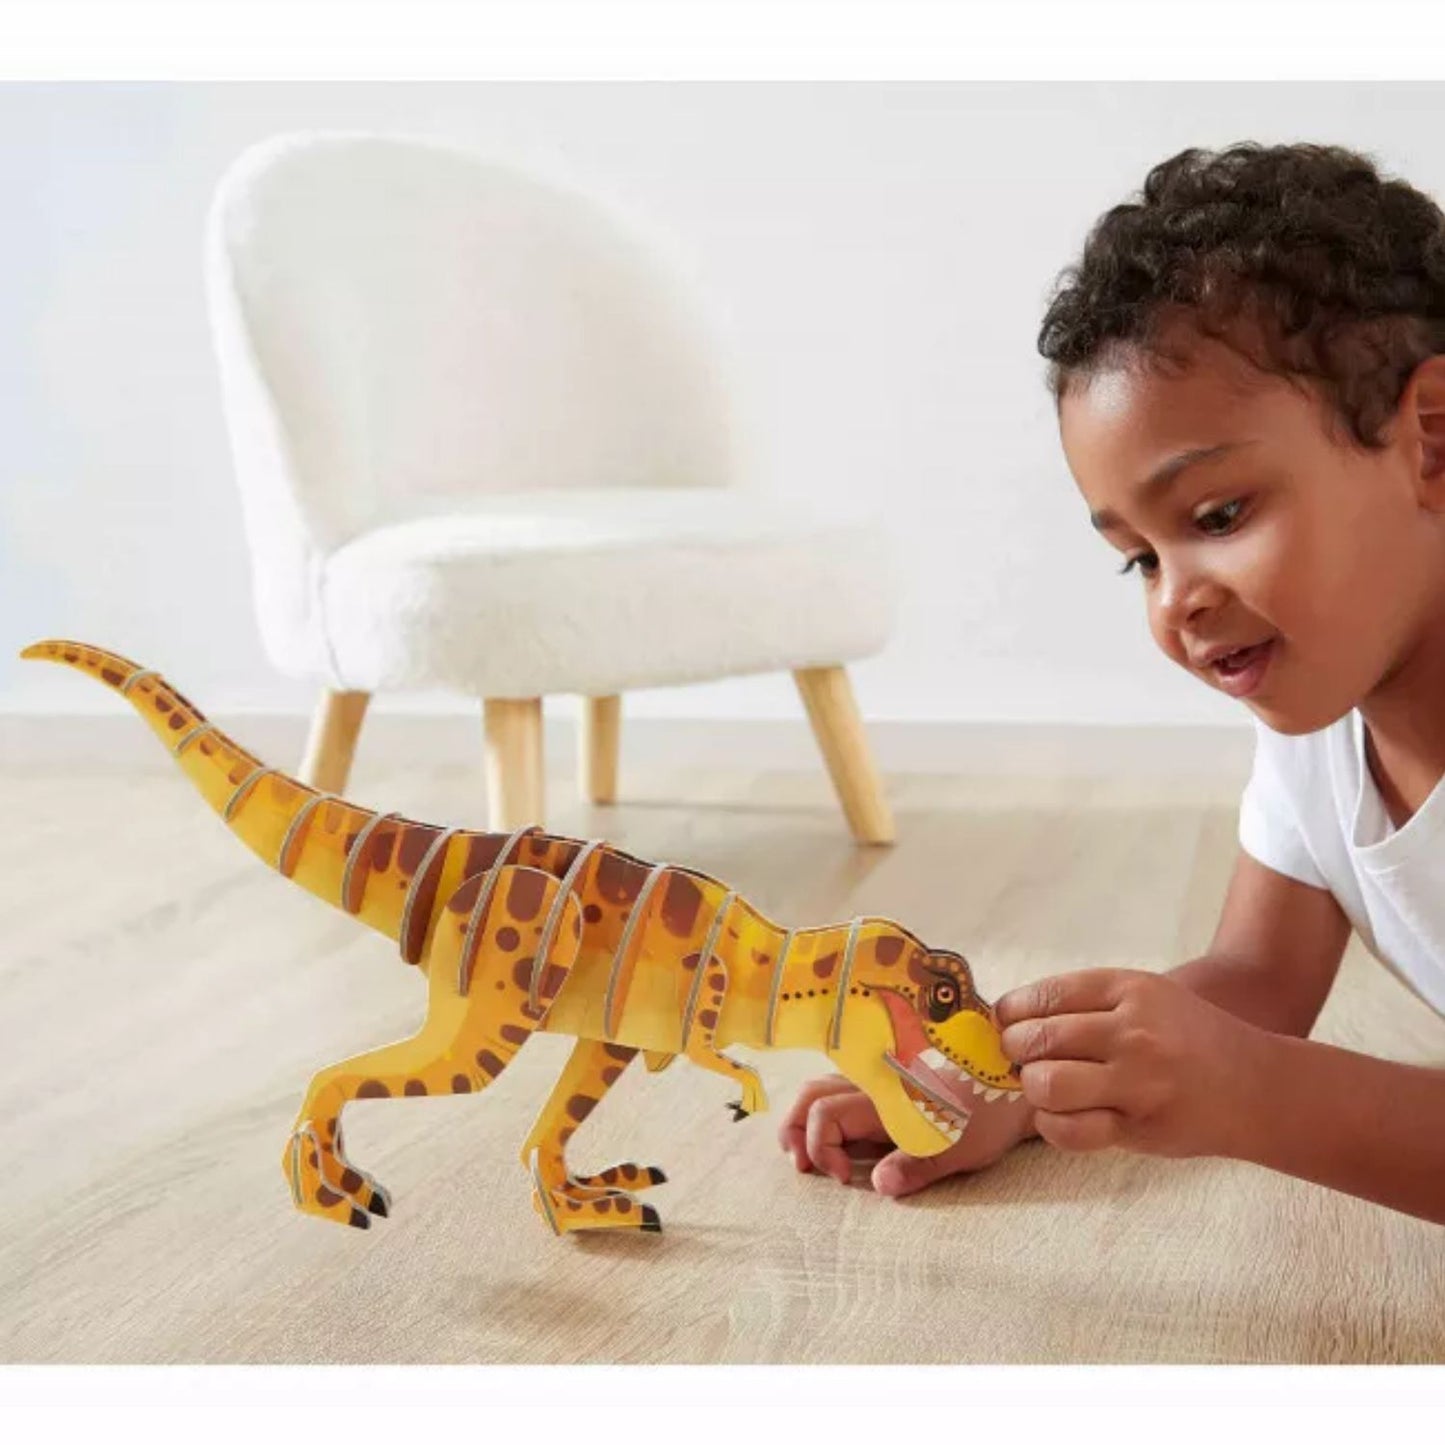 T-Rex 3D Puzzle | Puzzle For Kids